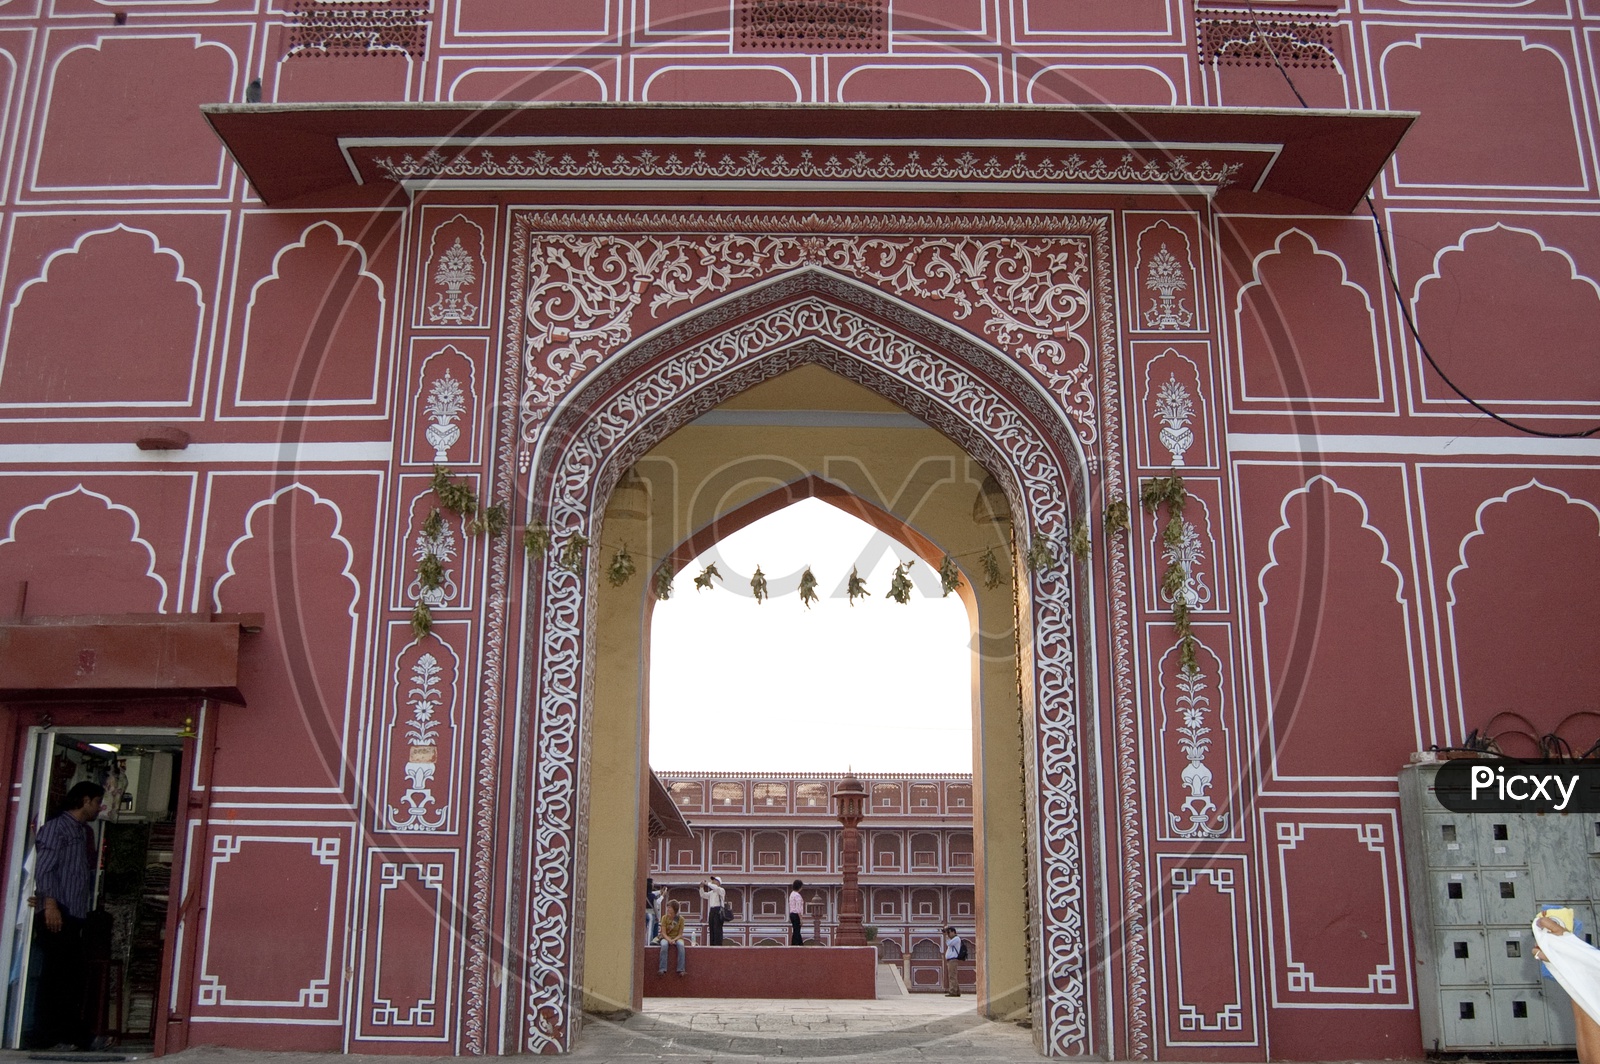 City Palace, Jaipur